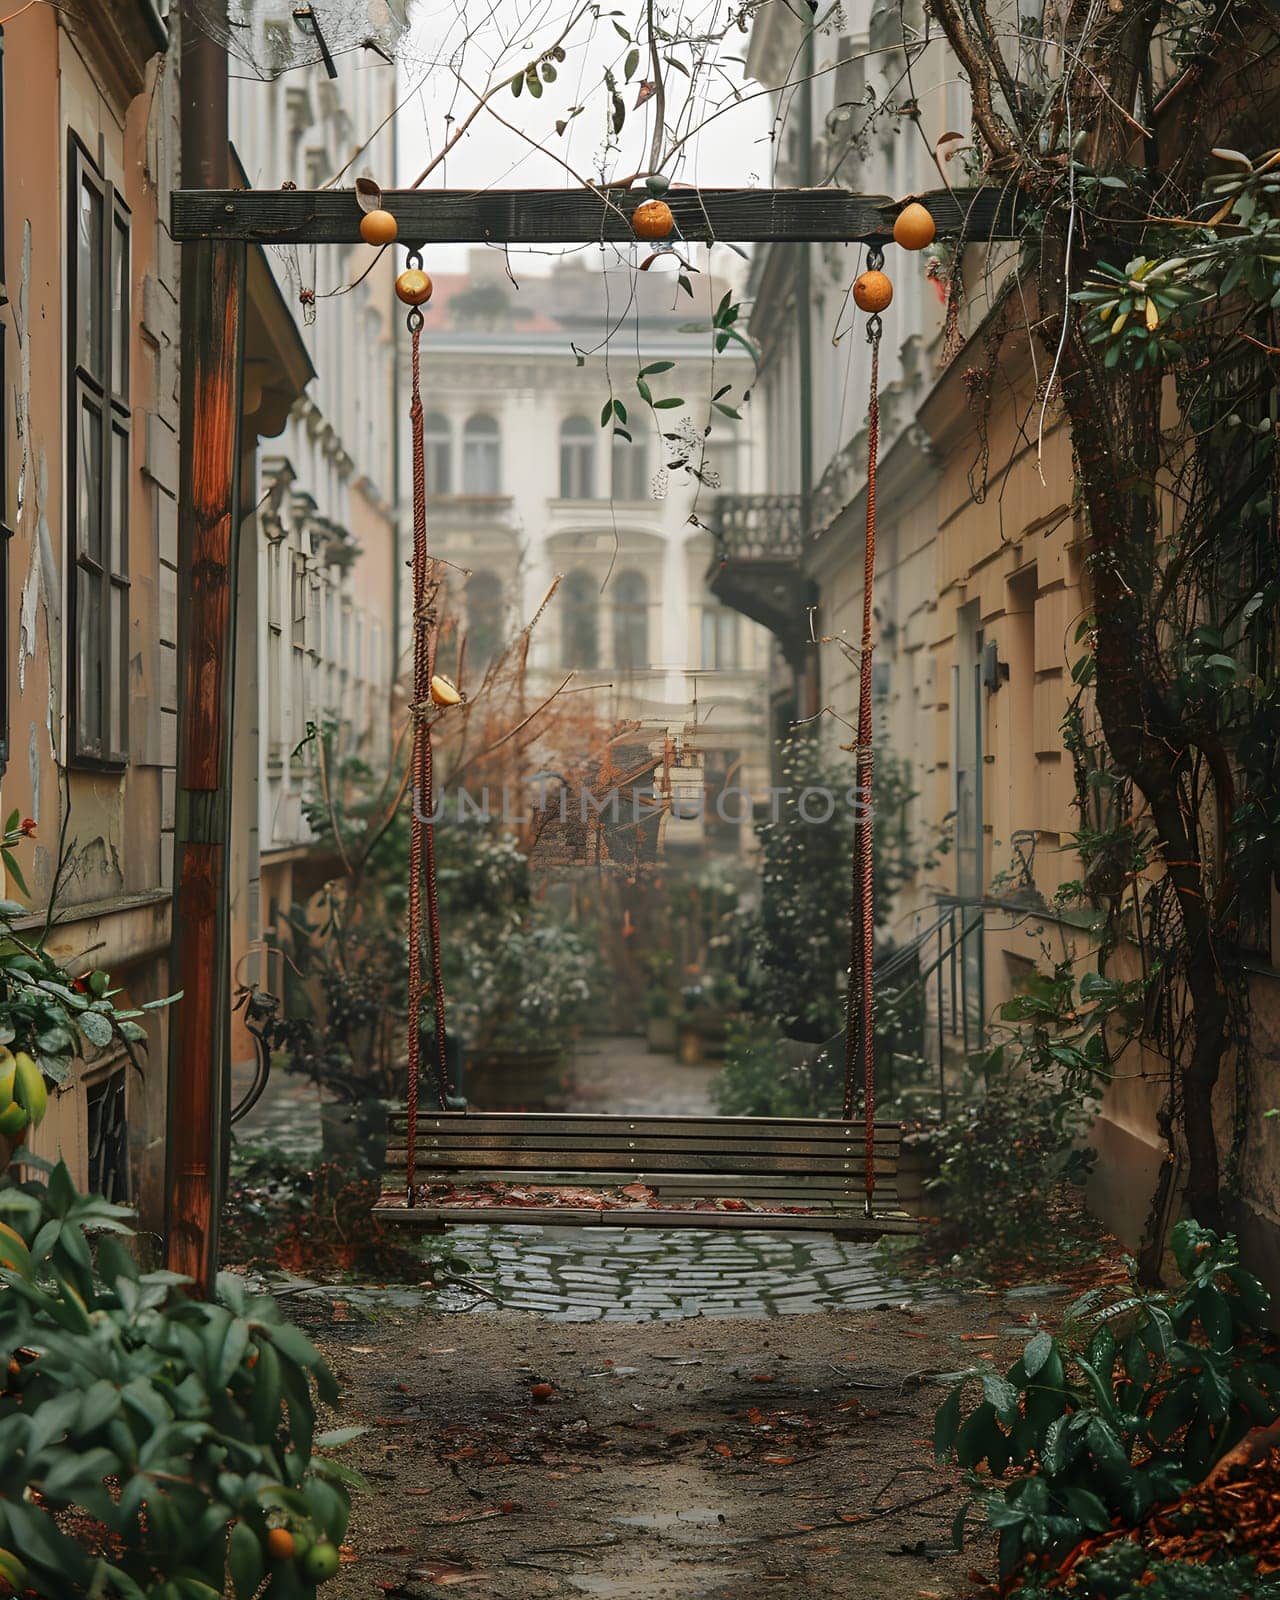 A swing hangs between two buildings in the urban alleyway by Nadtochiy